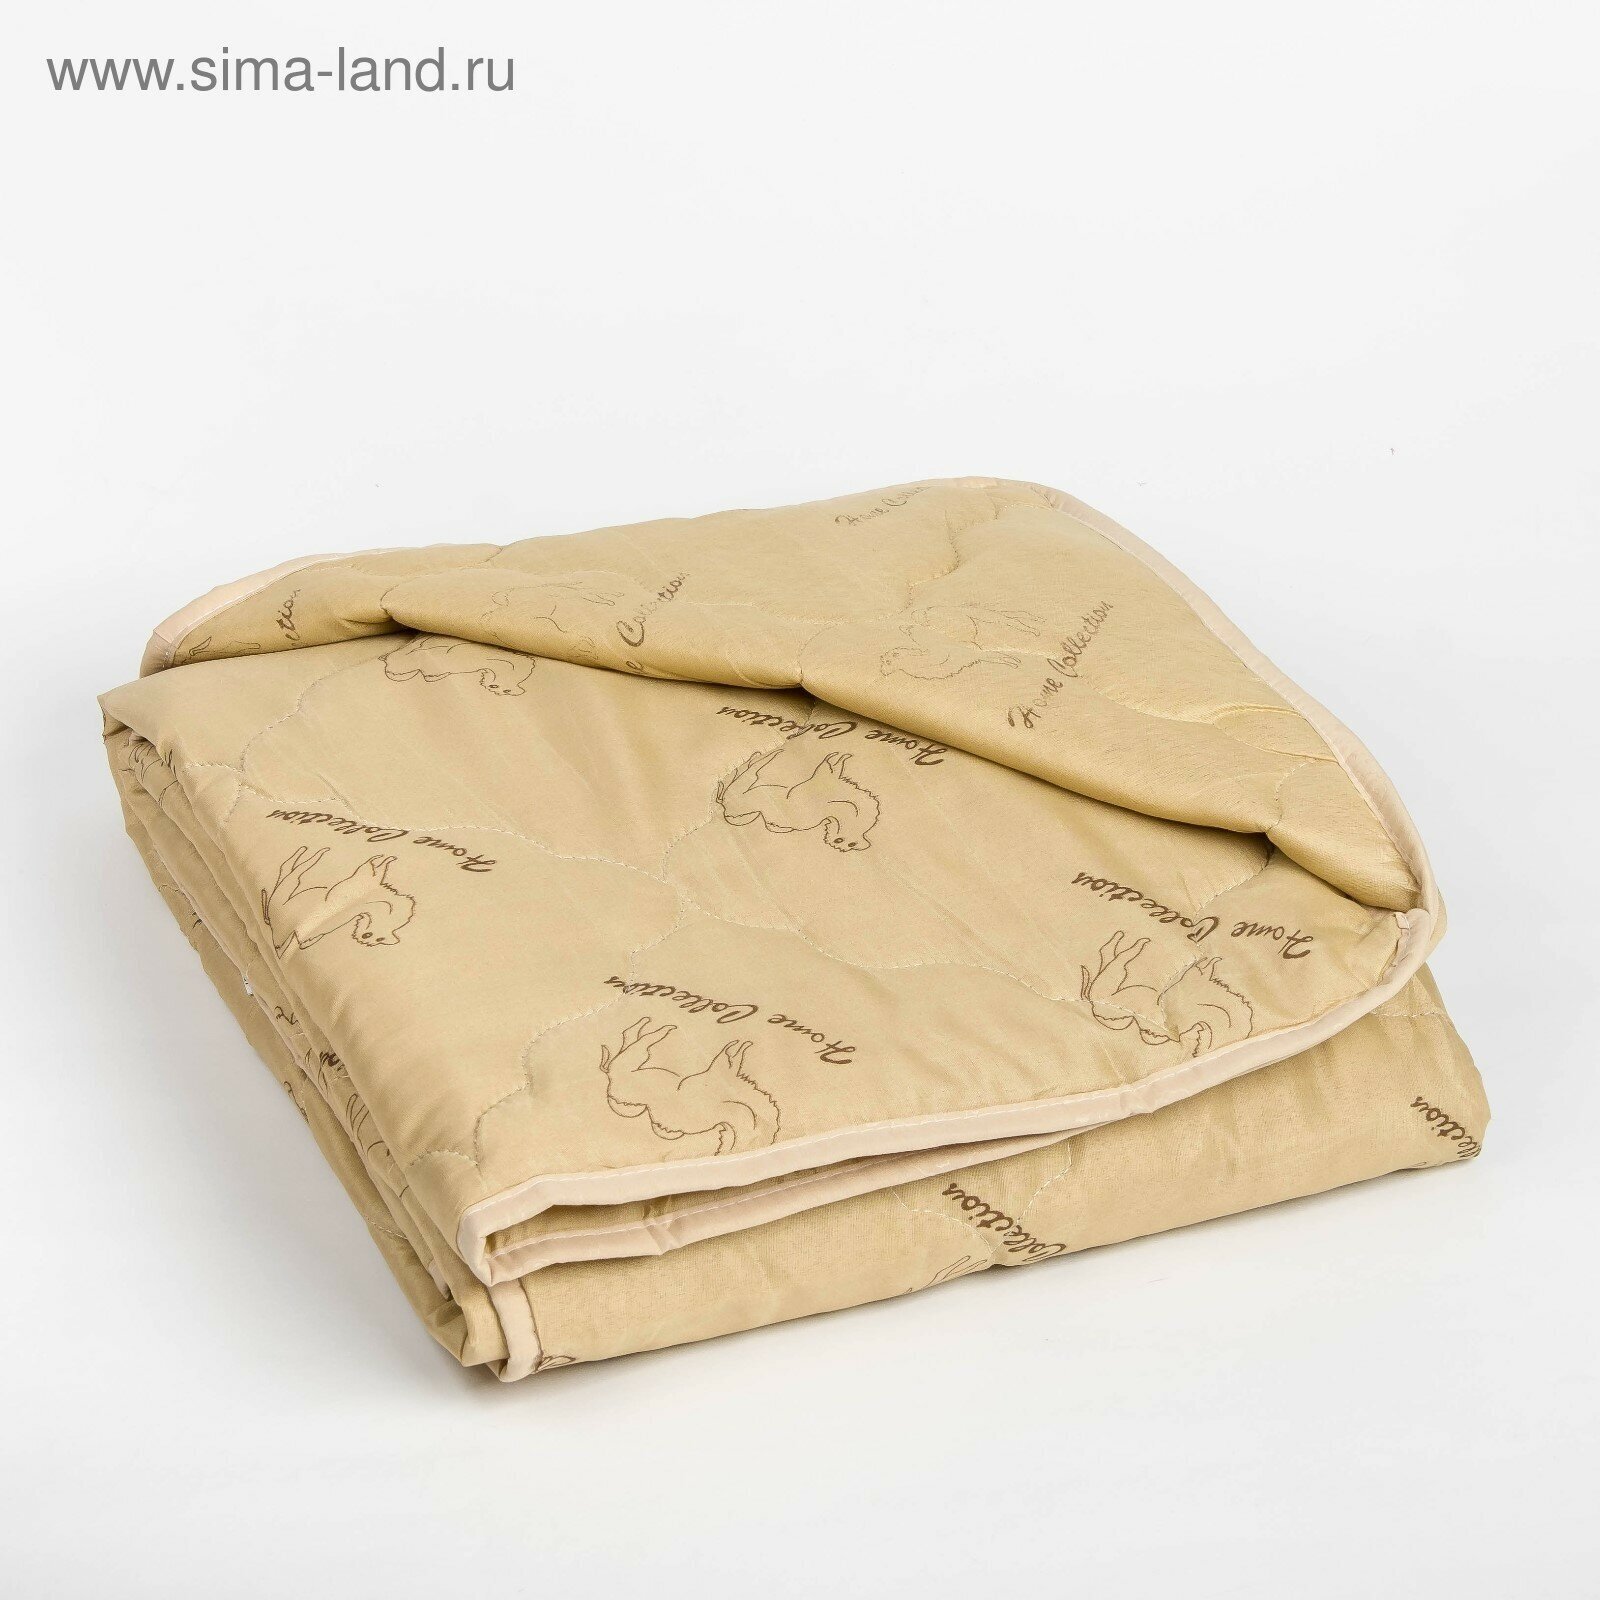 Одеяло облегчённое "Верблюжья шерсть", размер 172х205 ± 5 см, 200гр/м2, чехол п/э